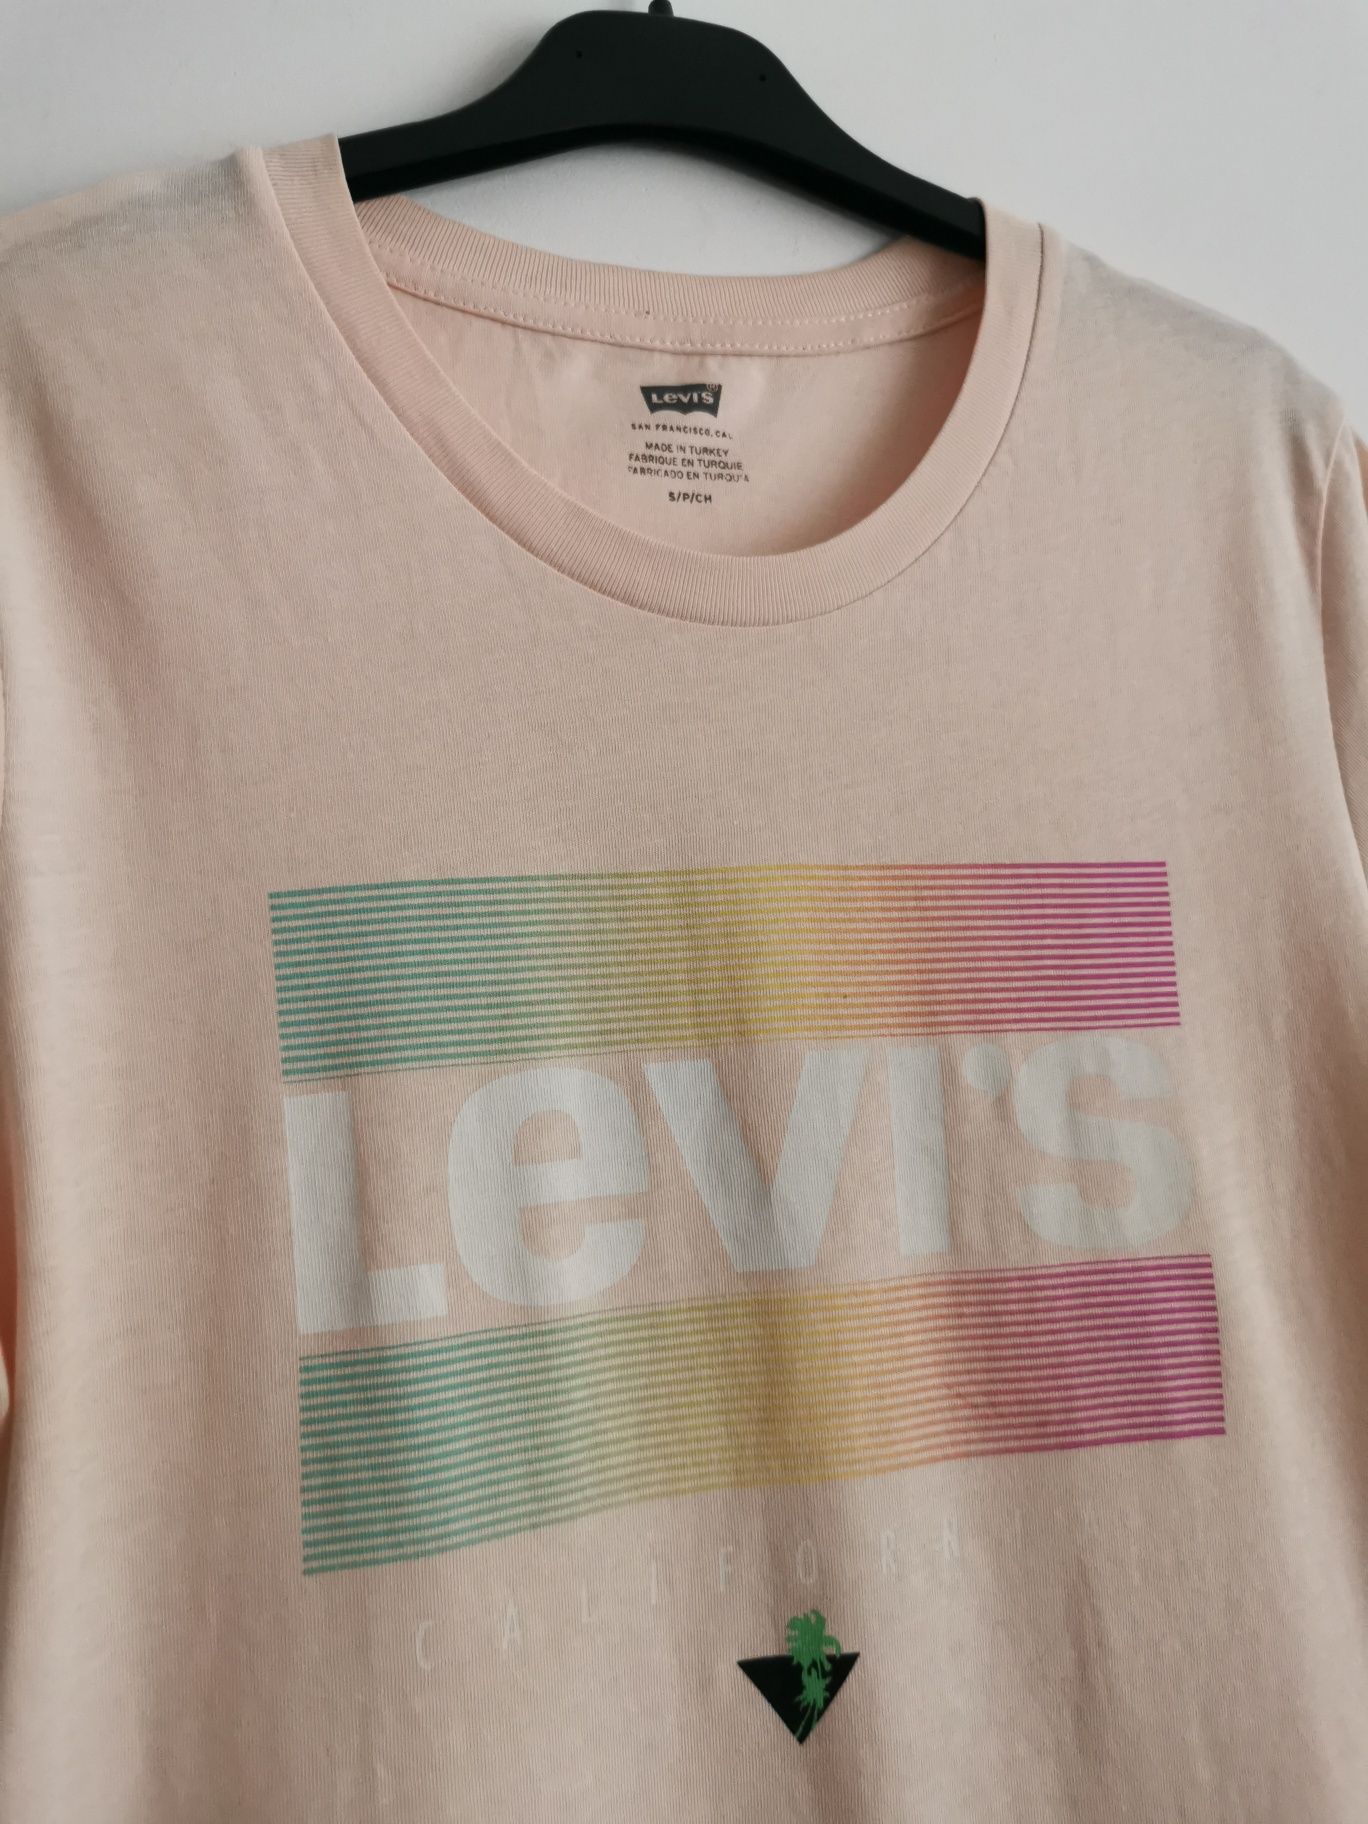 Levi's bluzka koszulka krótki rękaw sportowa logowana damska S/M